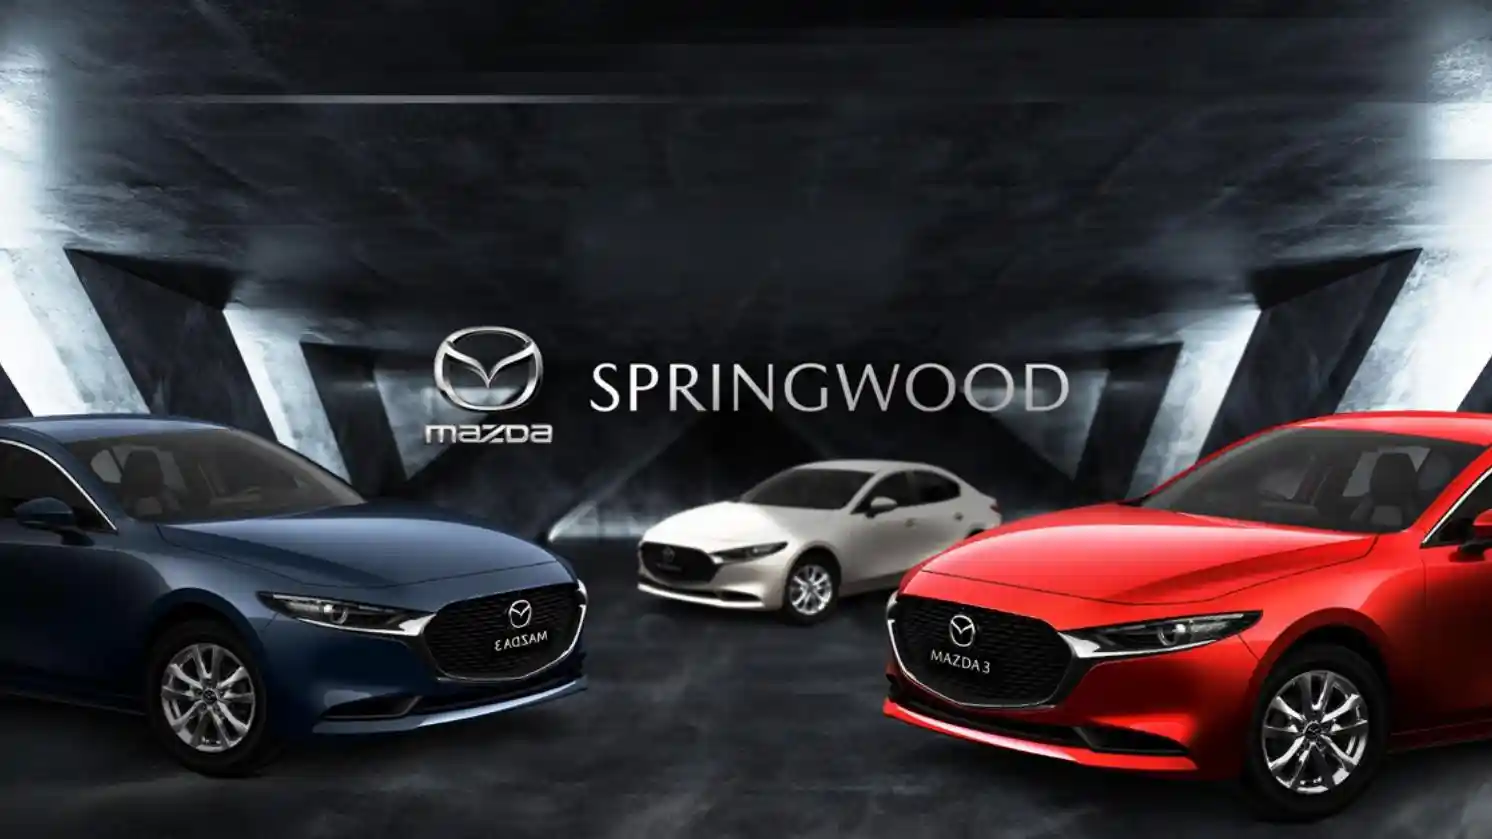 Springwood Mazda